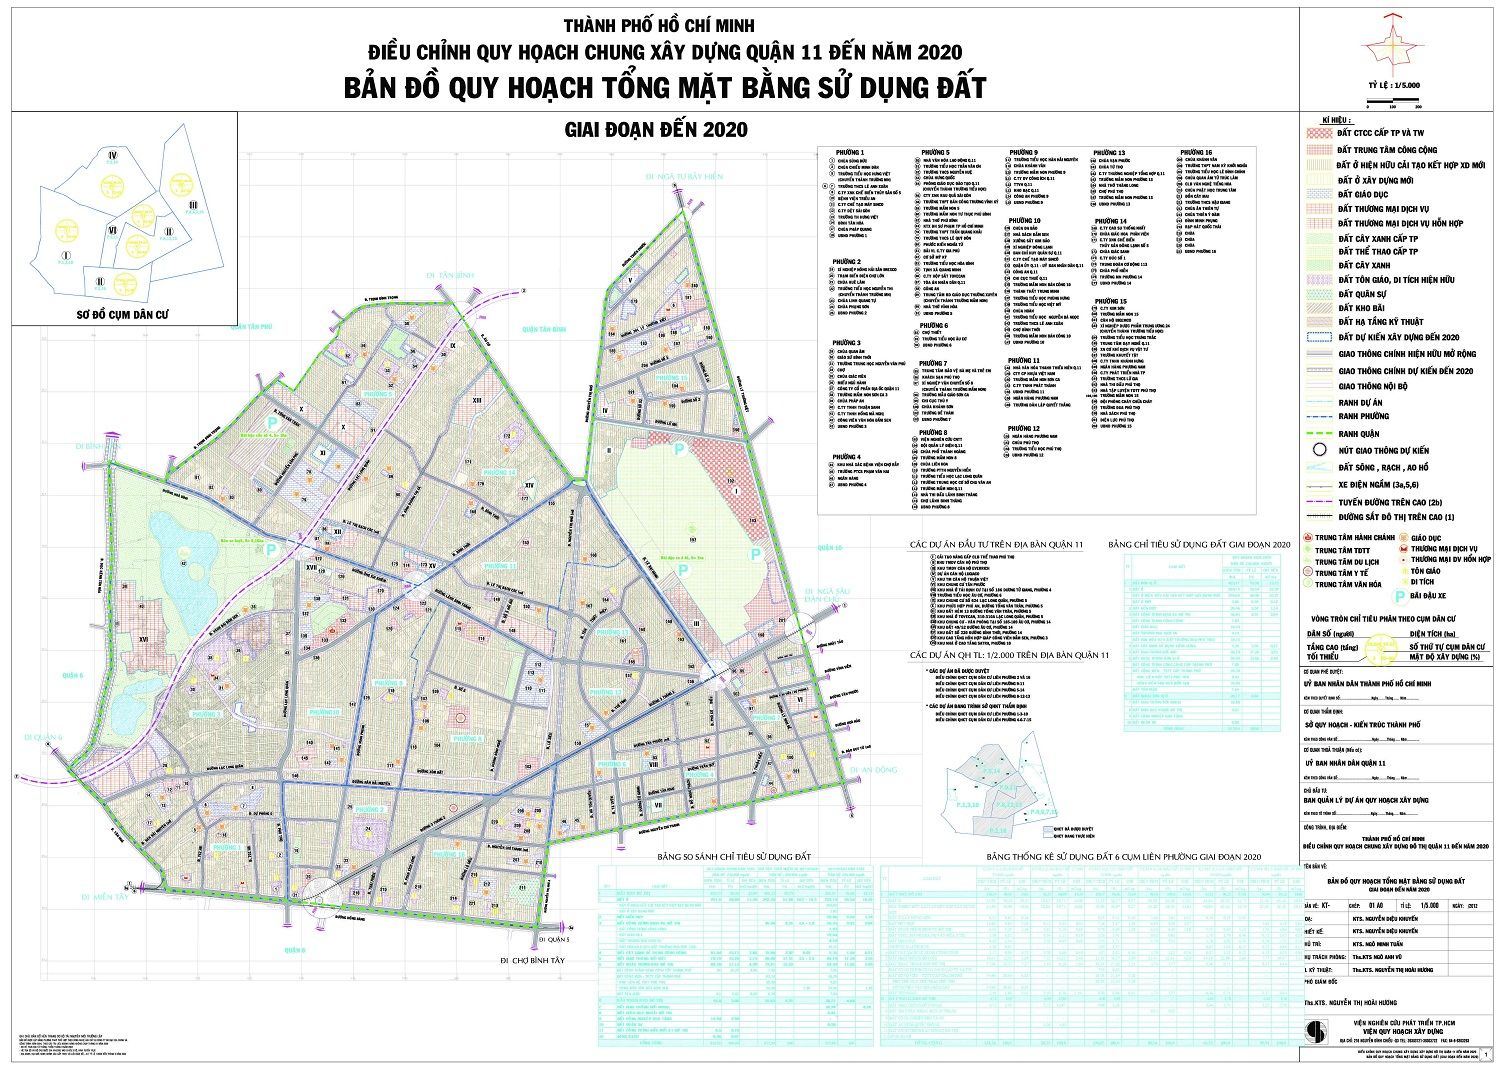 Bản đồ quy hoạch quận 11 2018 mới nhất thực hiện đến năm 2020